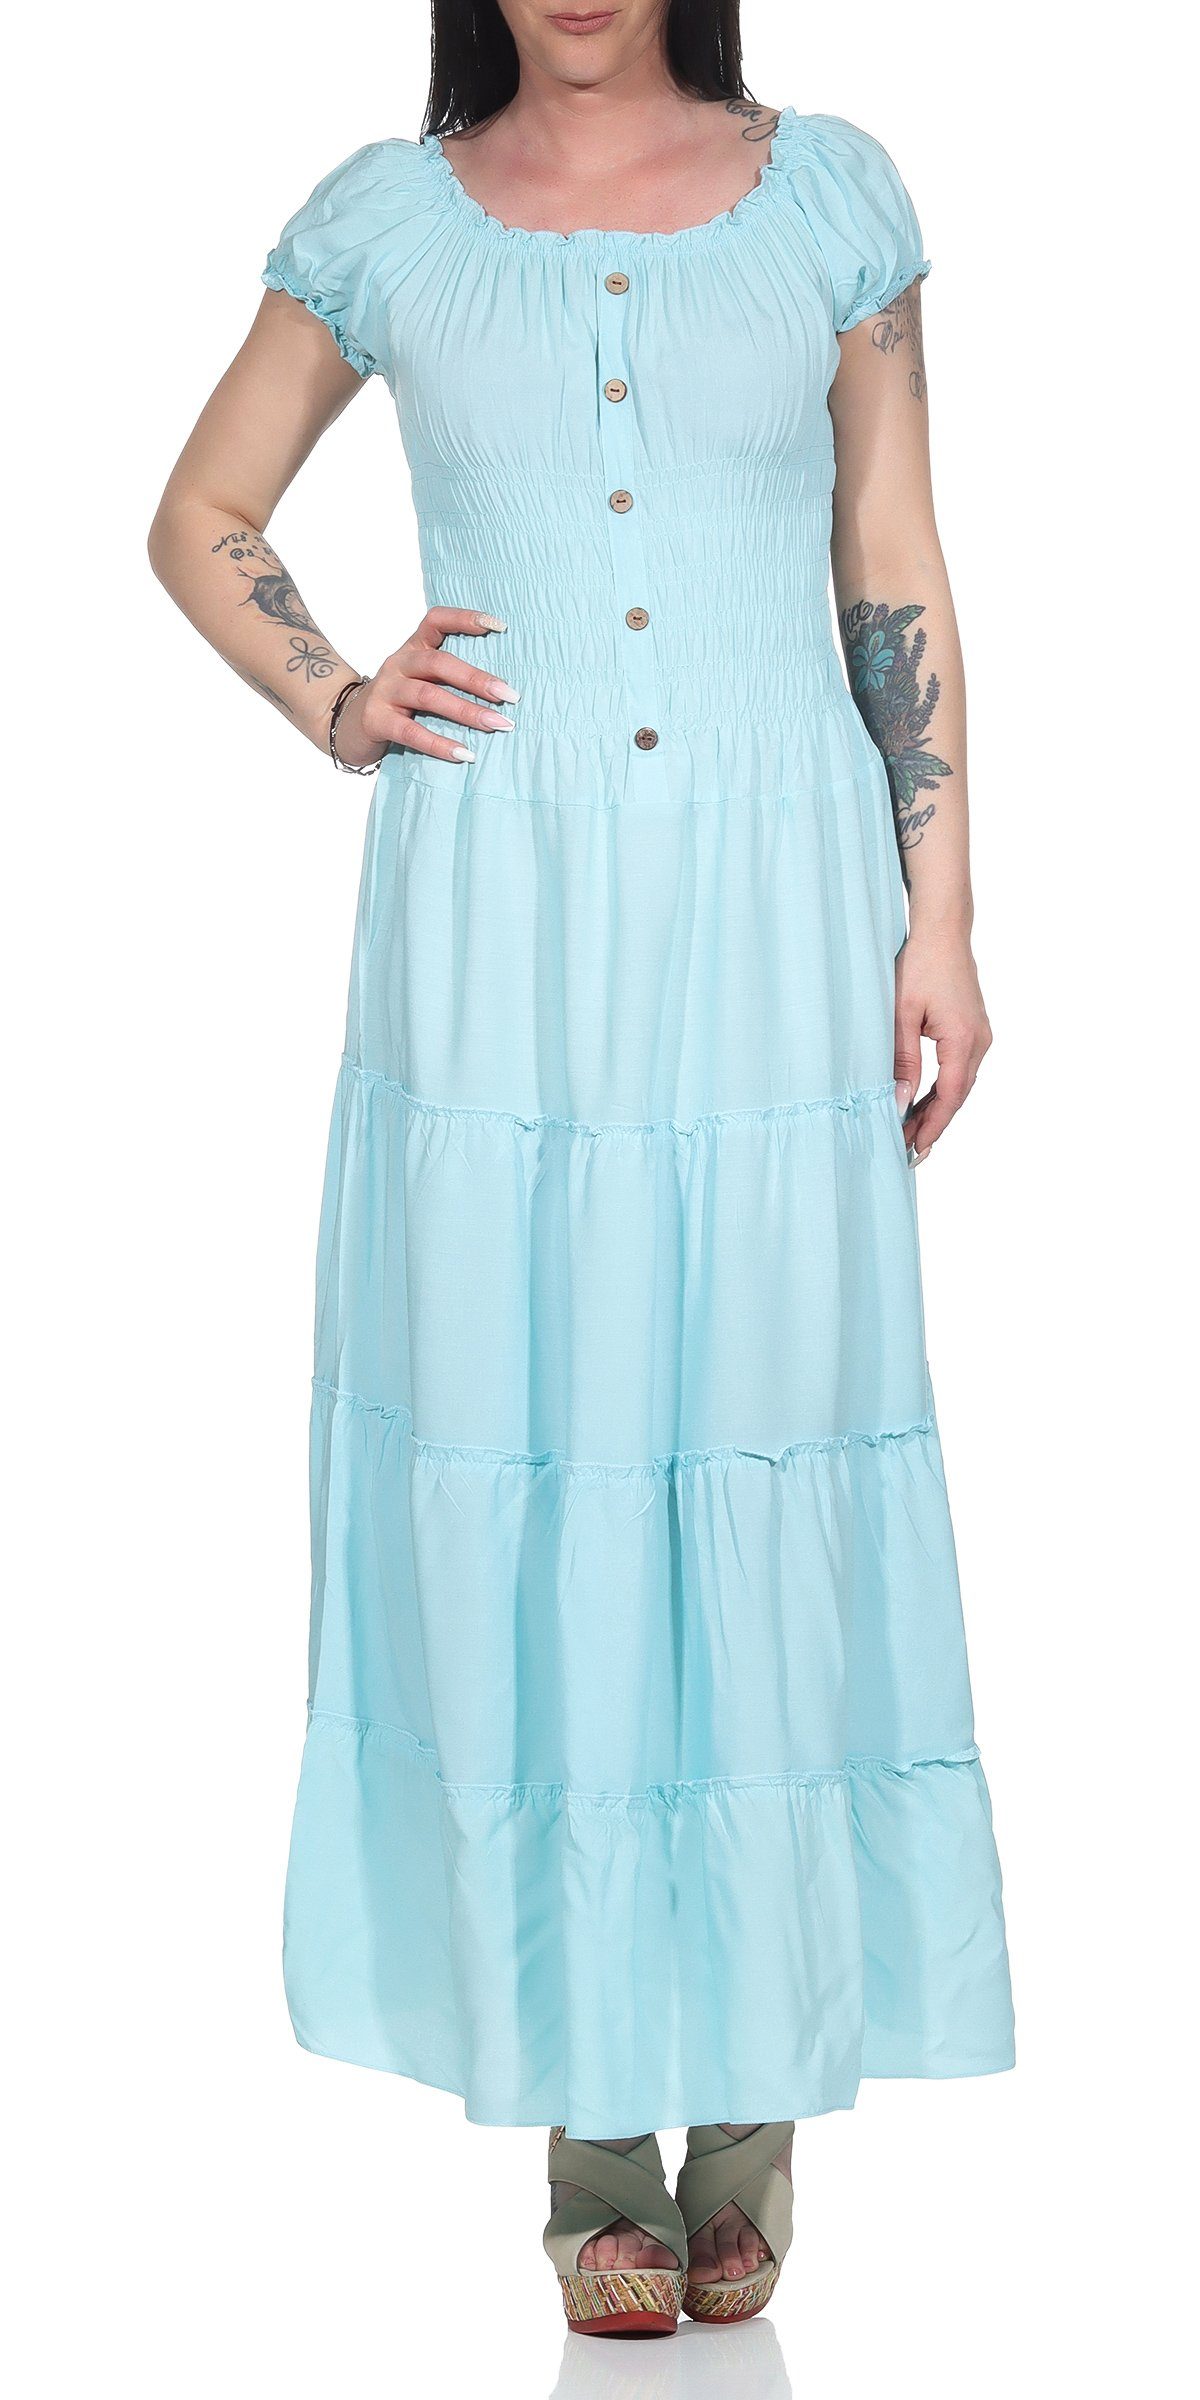 Aurela Damenmode Strandkleid Kleider Damen elegant Sommer Kleider lang einfarbig Gesamtlänge: 132 - 135cm, Carmen- oder Rundhals Ausschnitt möglich Türkis